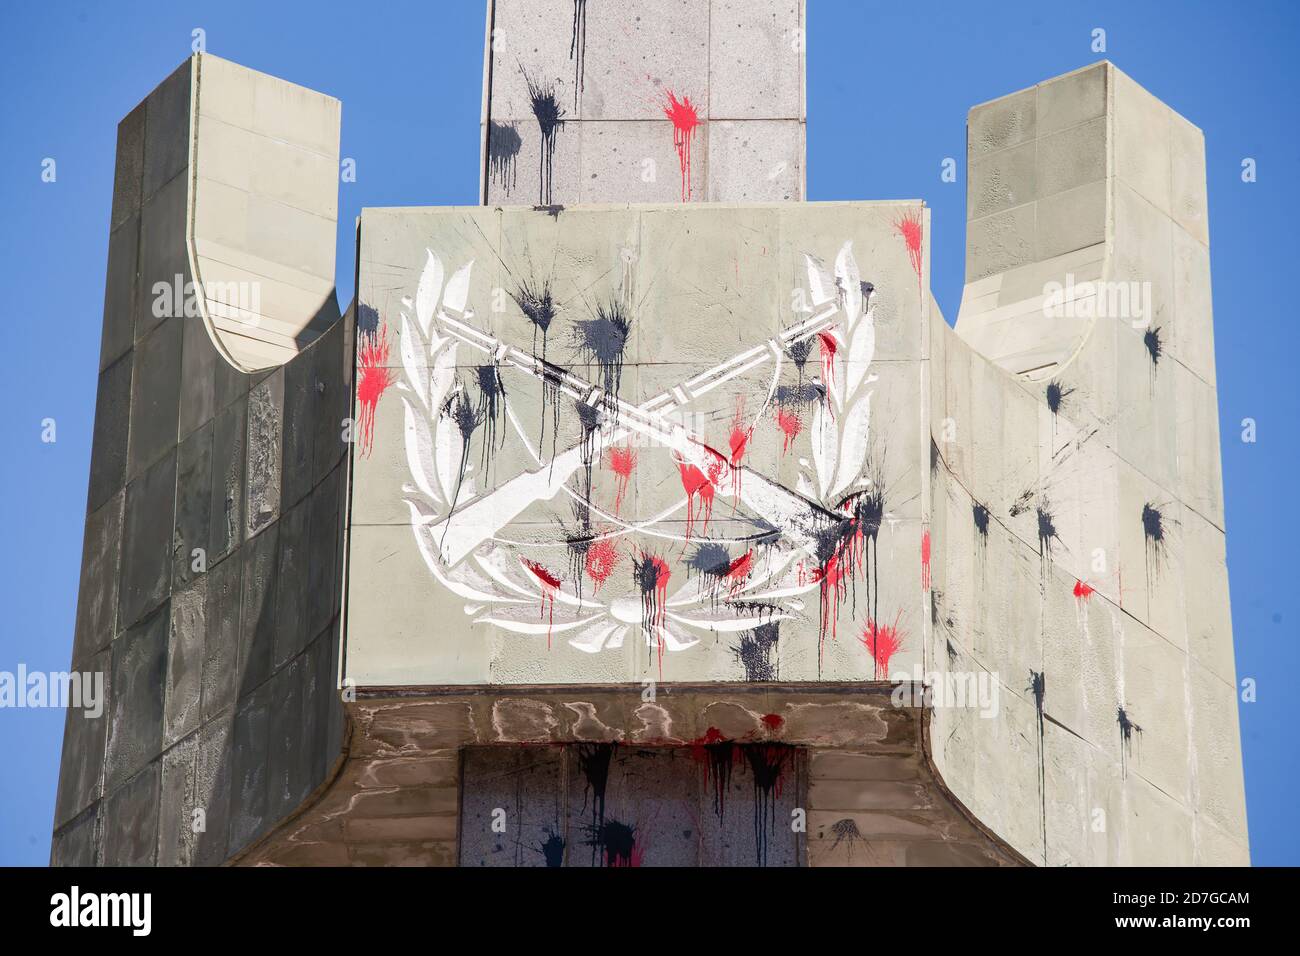 SANTIAGO, CHILI-18 OCTOBRE 2020 - Monument aux martyrs des Carabineros (police chilienne) vandalisé au cours d'une année de manifestations de l'outb social Banque D'Images